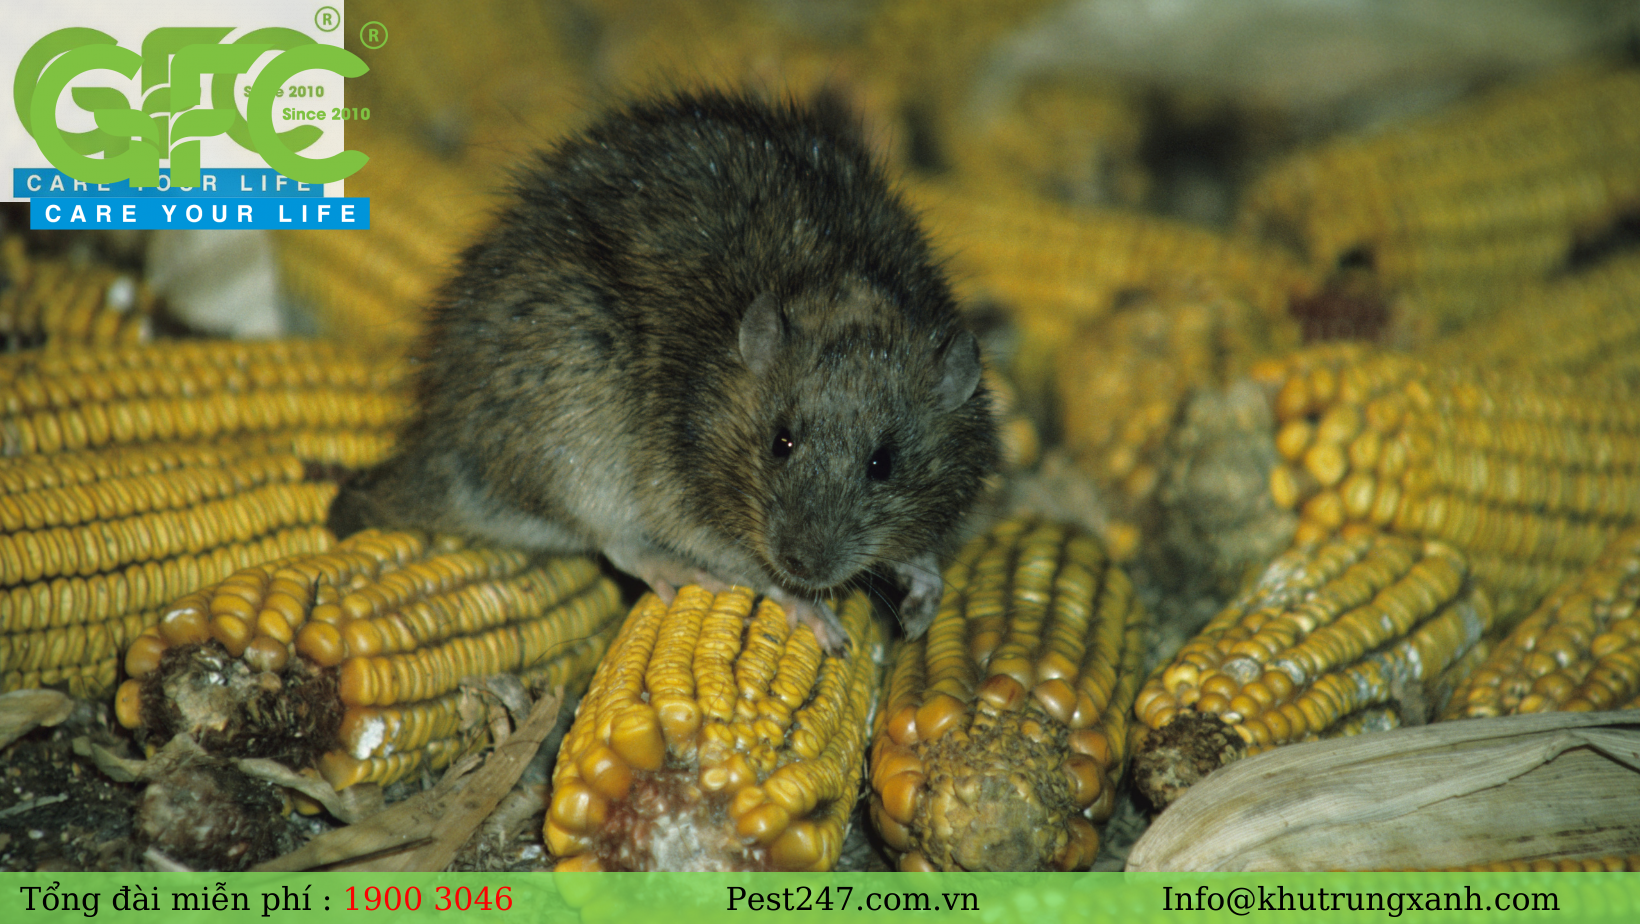 Chuột nhà trưởng thành thường dao động trong khoảng từ 7- 10 cm